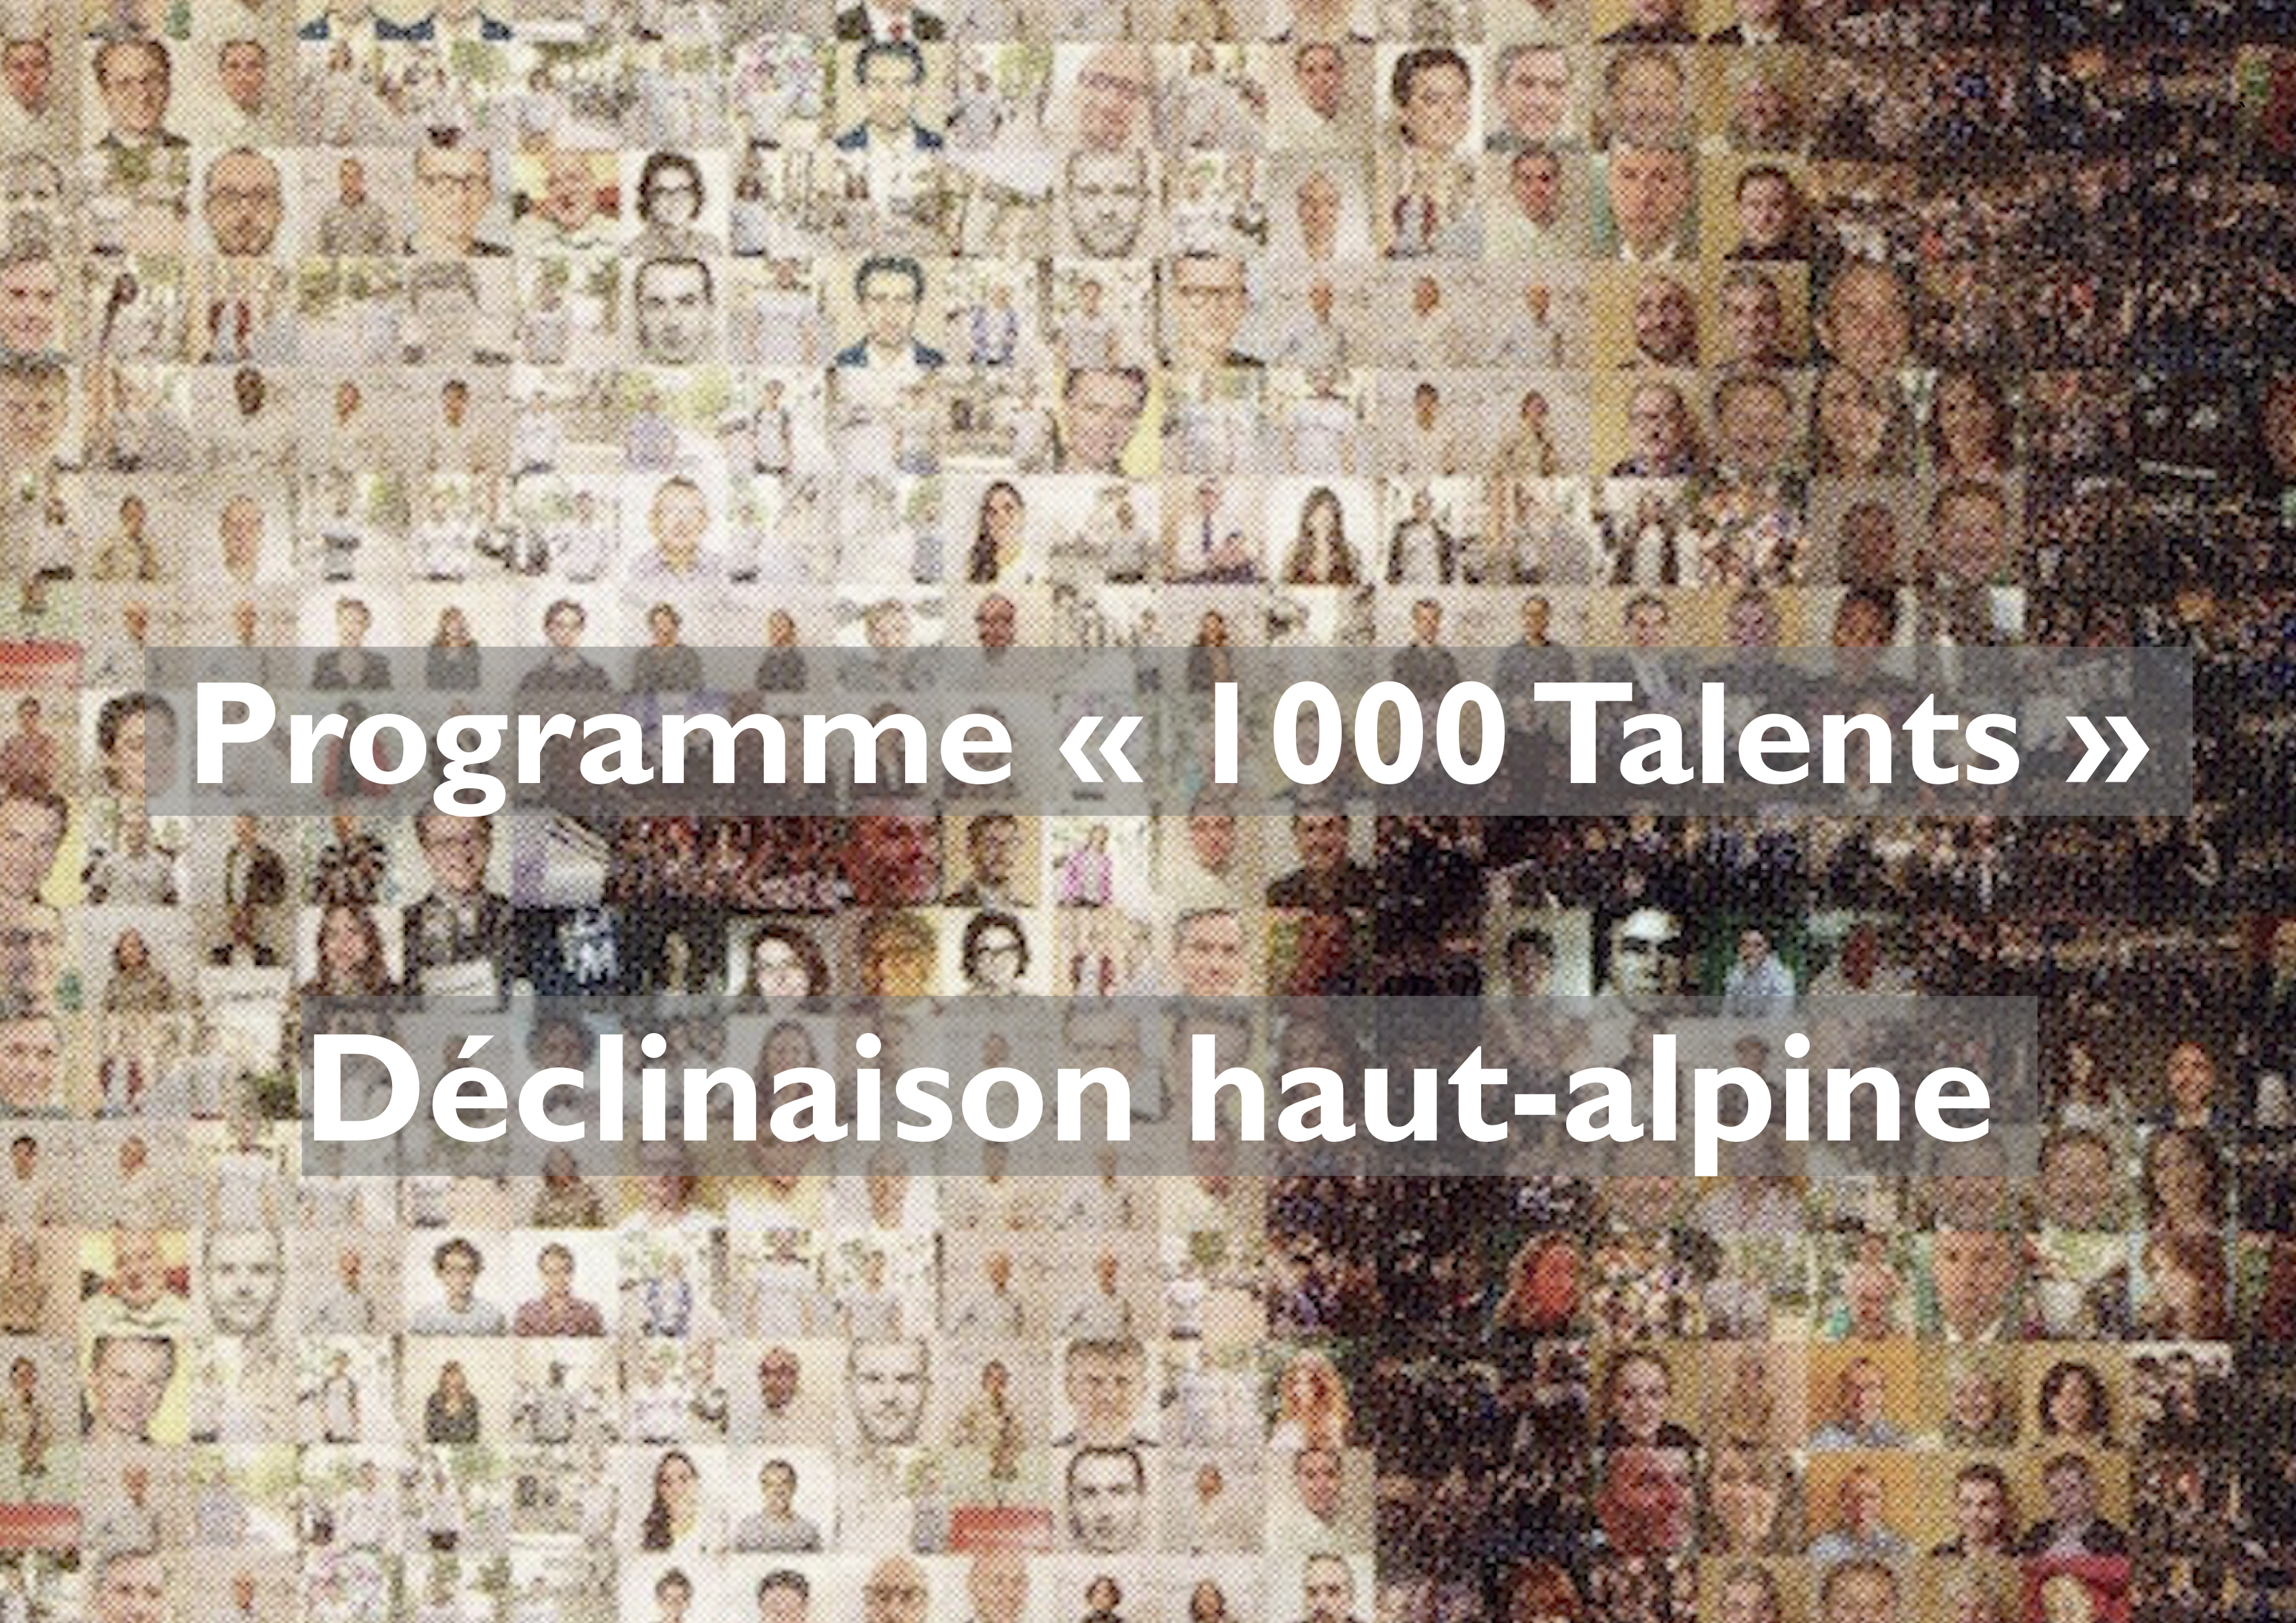 Programme "1000 Talents"